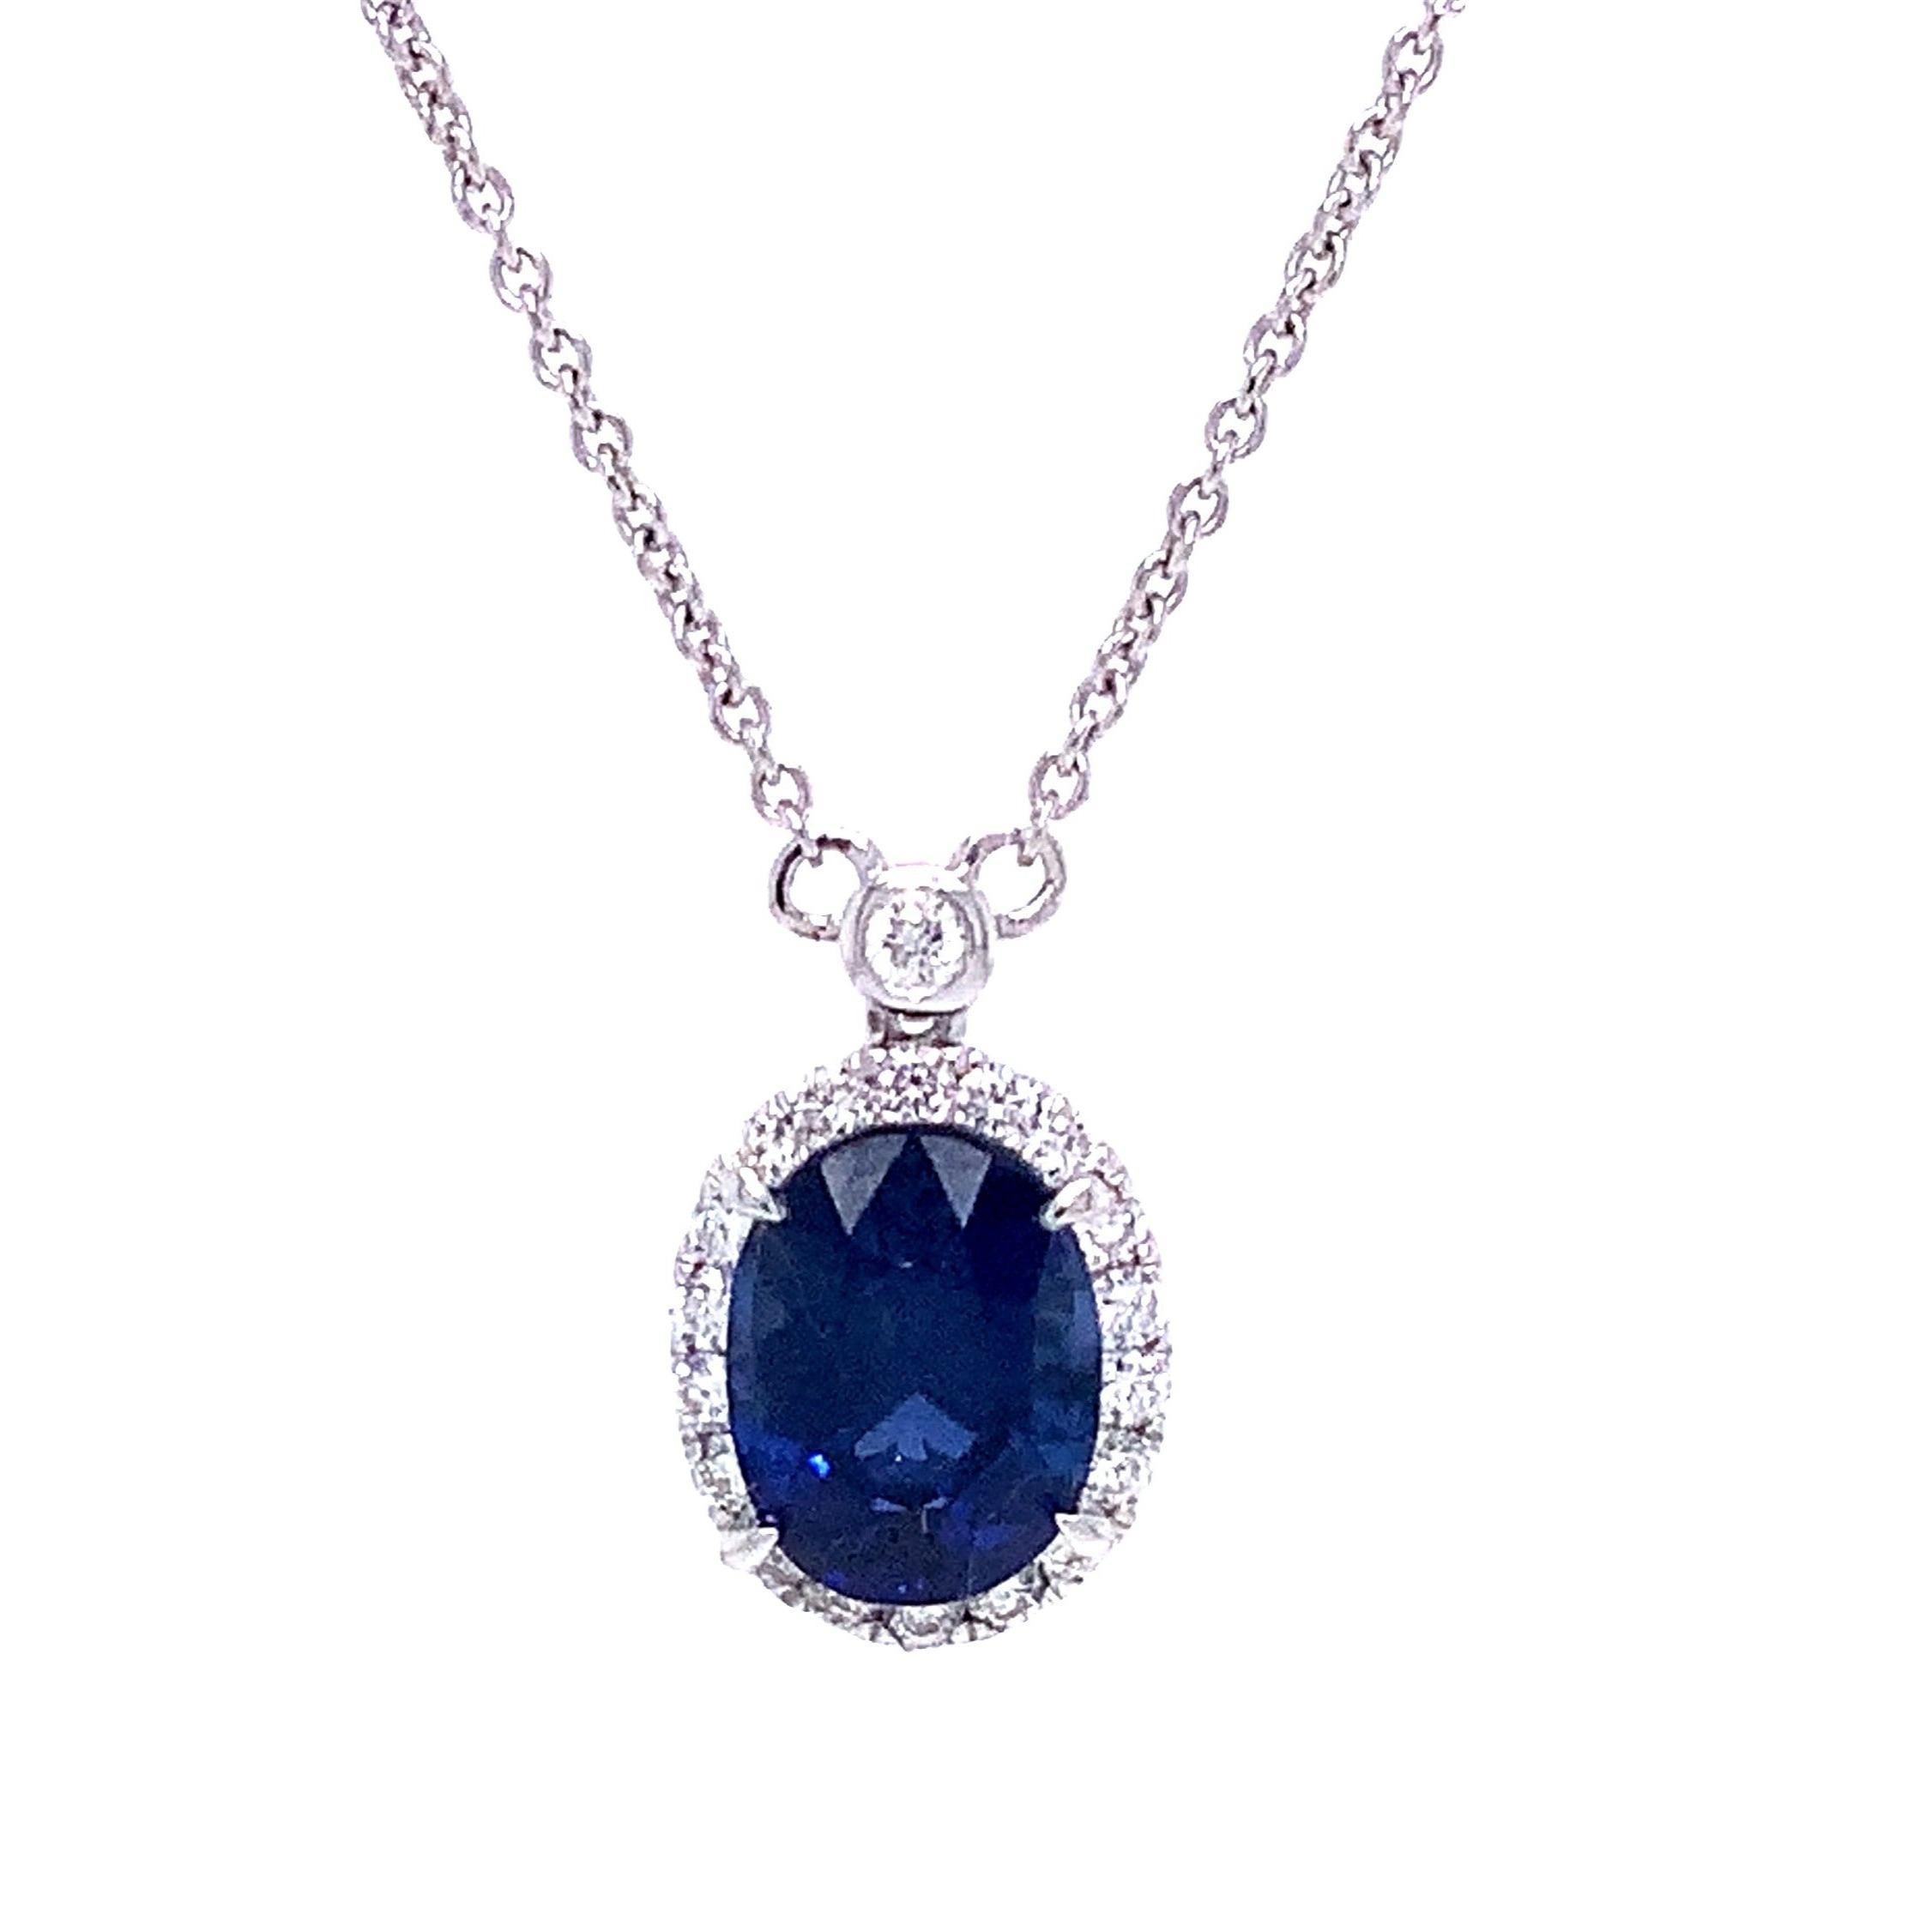 Roman + Jules Blauer Saphir und Diamant-Halskette
Die Halskette mit blauem Saphir und Diamanten von Roman + Jules ist eine glamouröse Ergänzung für Ihre Schmucksammlung. Diese einzigartige Kombination aus blauem Saphir und runden Diamanten ist aus